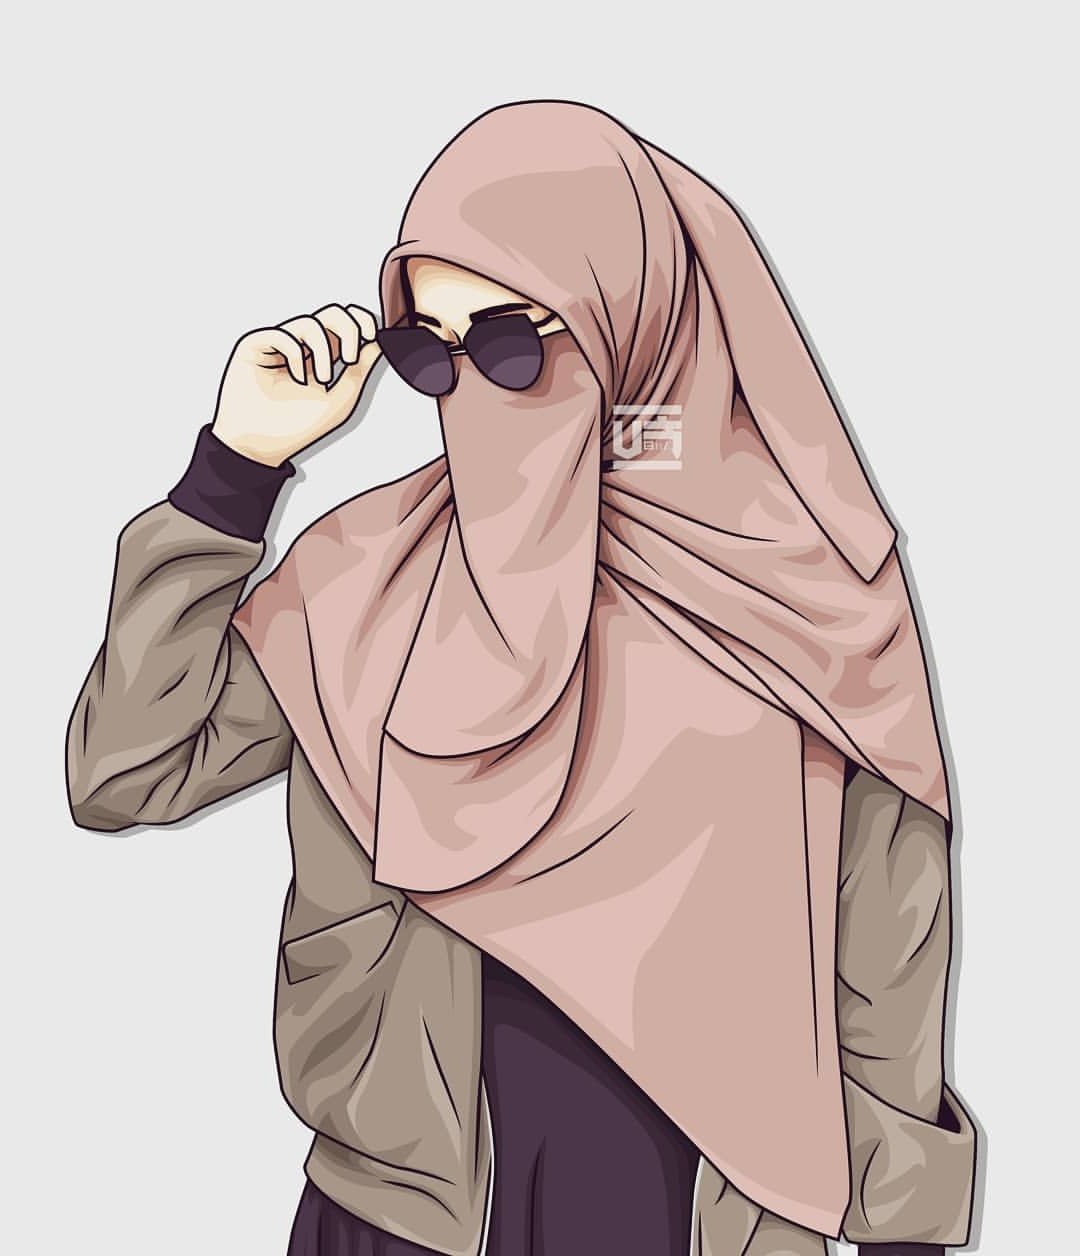 Inspirasi Muslimah Kartun Cantik Zwd9 1000 Gambar Kartun Muslimah Cantik Bercadar Kacamata El